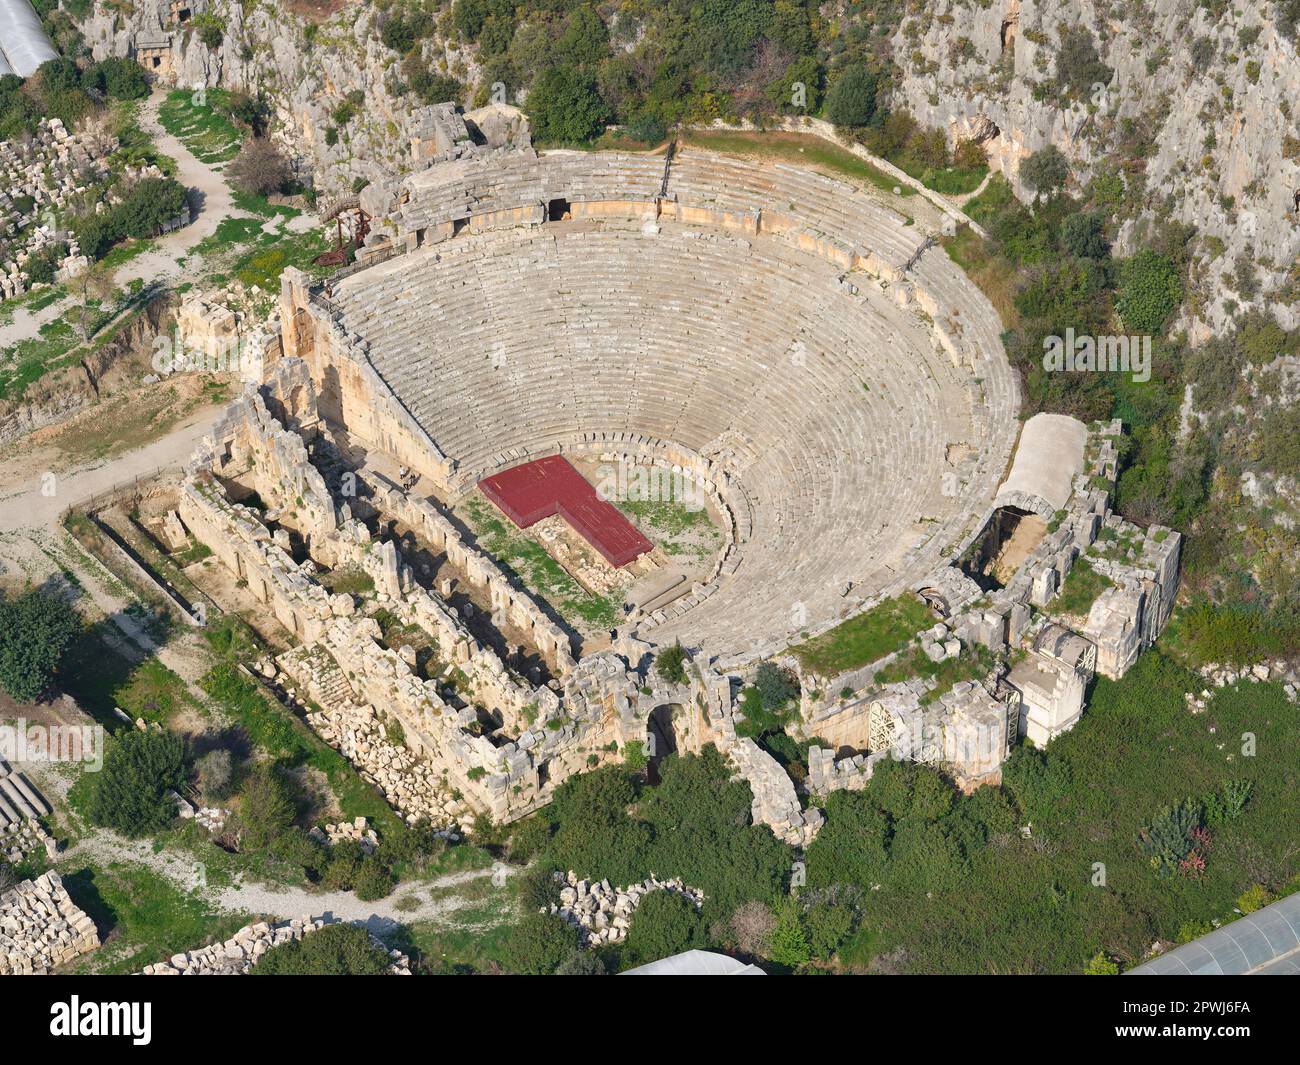 VUE AÉRIENNE. GRECO-Théâtre romain de Myra. Alakent, province d'Antalya, Turquie. Banque D'Images